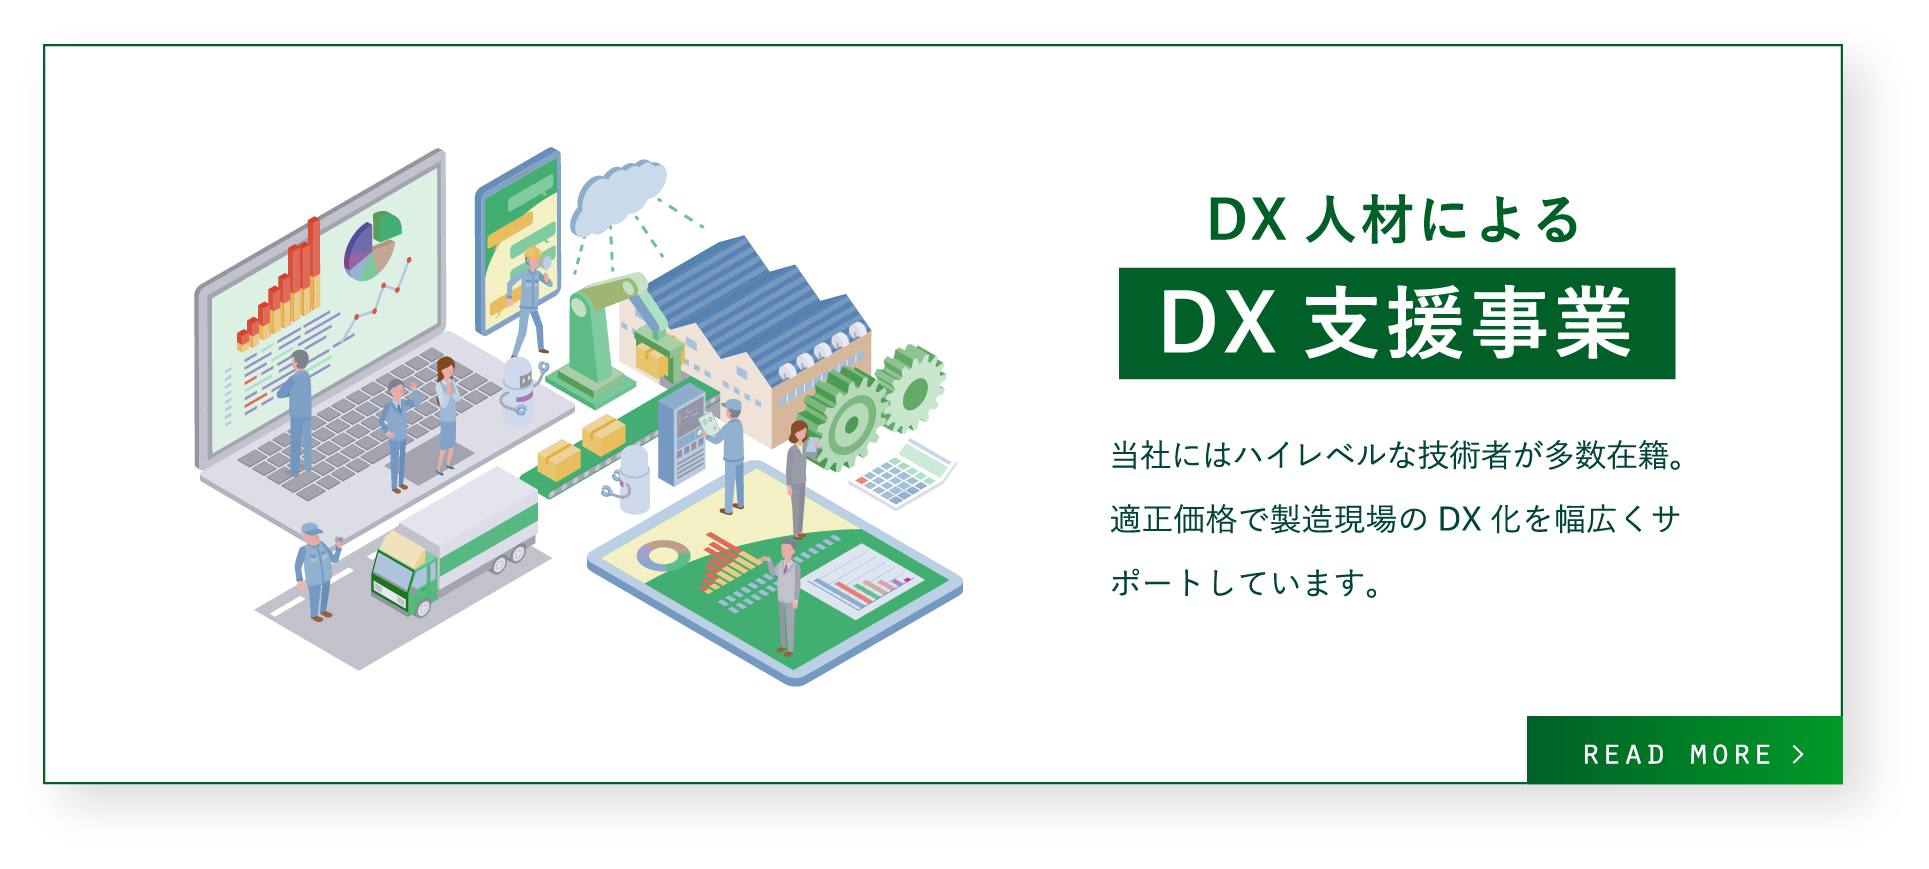 DX人材によるDX支援事業 / 当社にはハイレベルな技術者が多数在籍。
適正価格で製造現場のDX化を幅広くサポートしています。